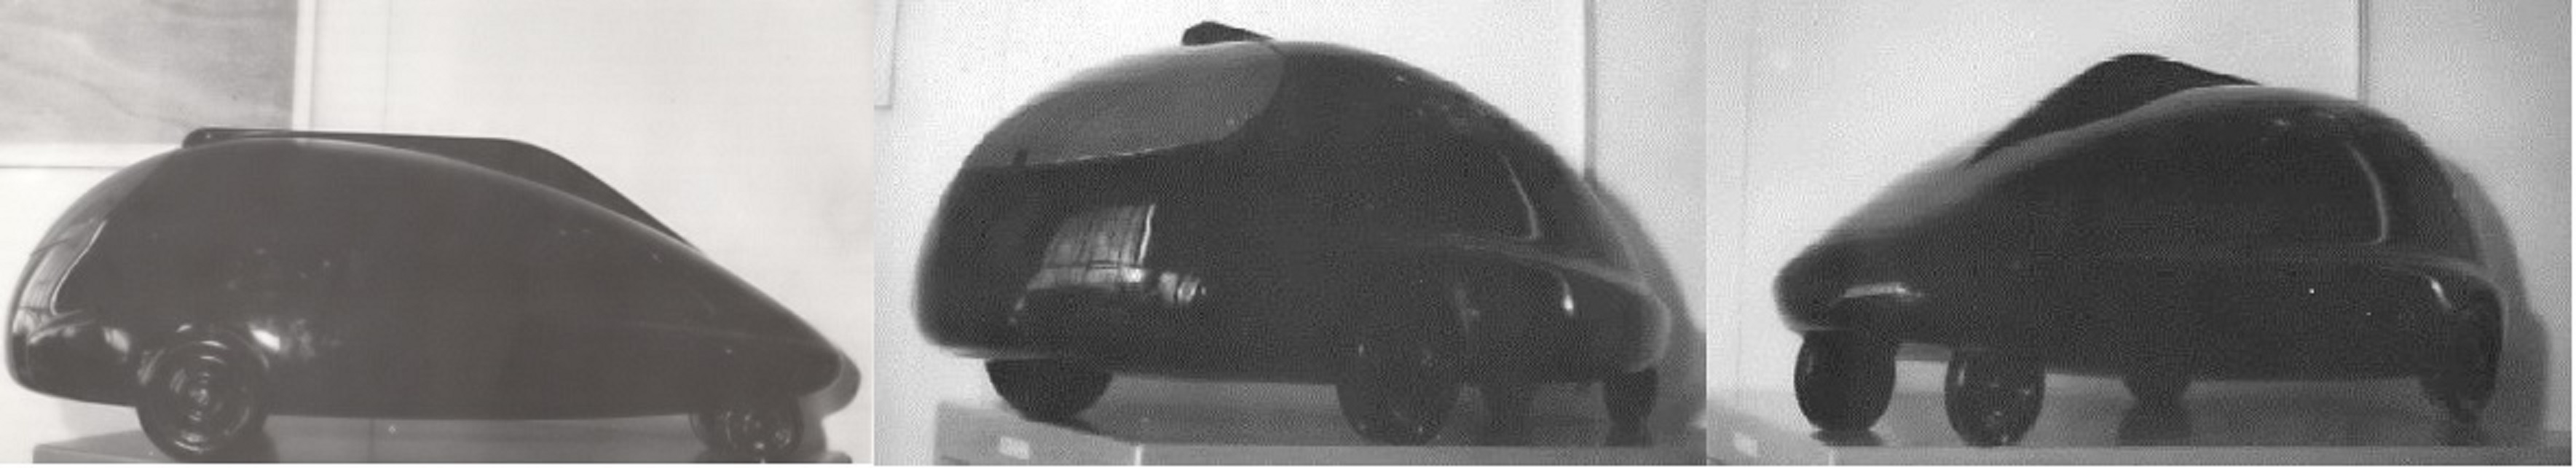 Esta maqueta del C8 fue descubierta in un gr anero de la Ferte-Vidame en los anos 80. SemanalClásico - Revista online de coches clásicos, de colección y sport - clasicos francia